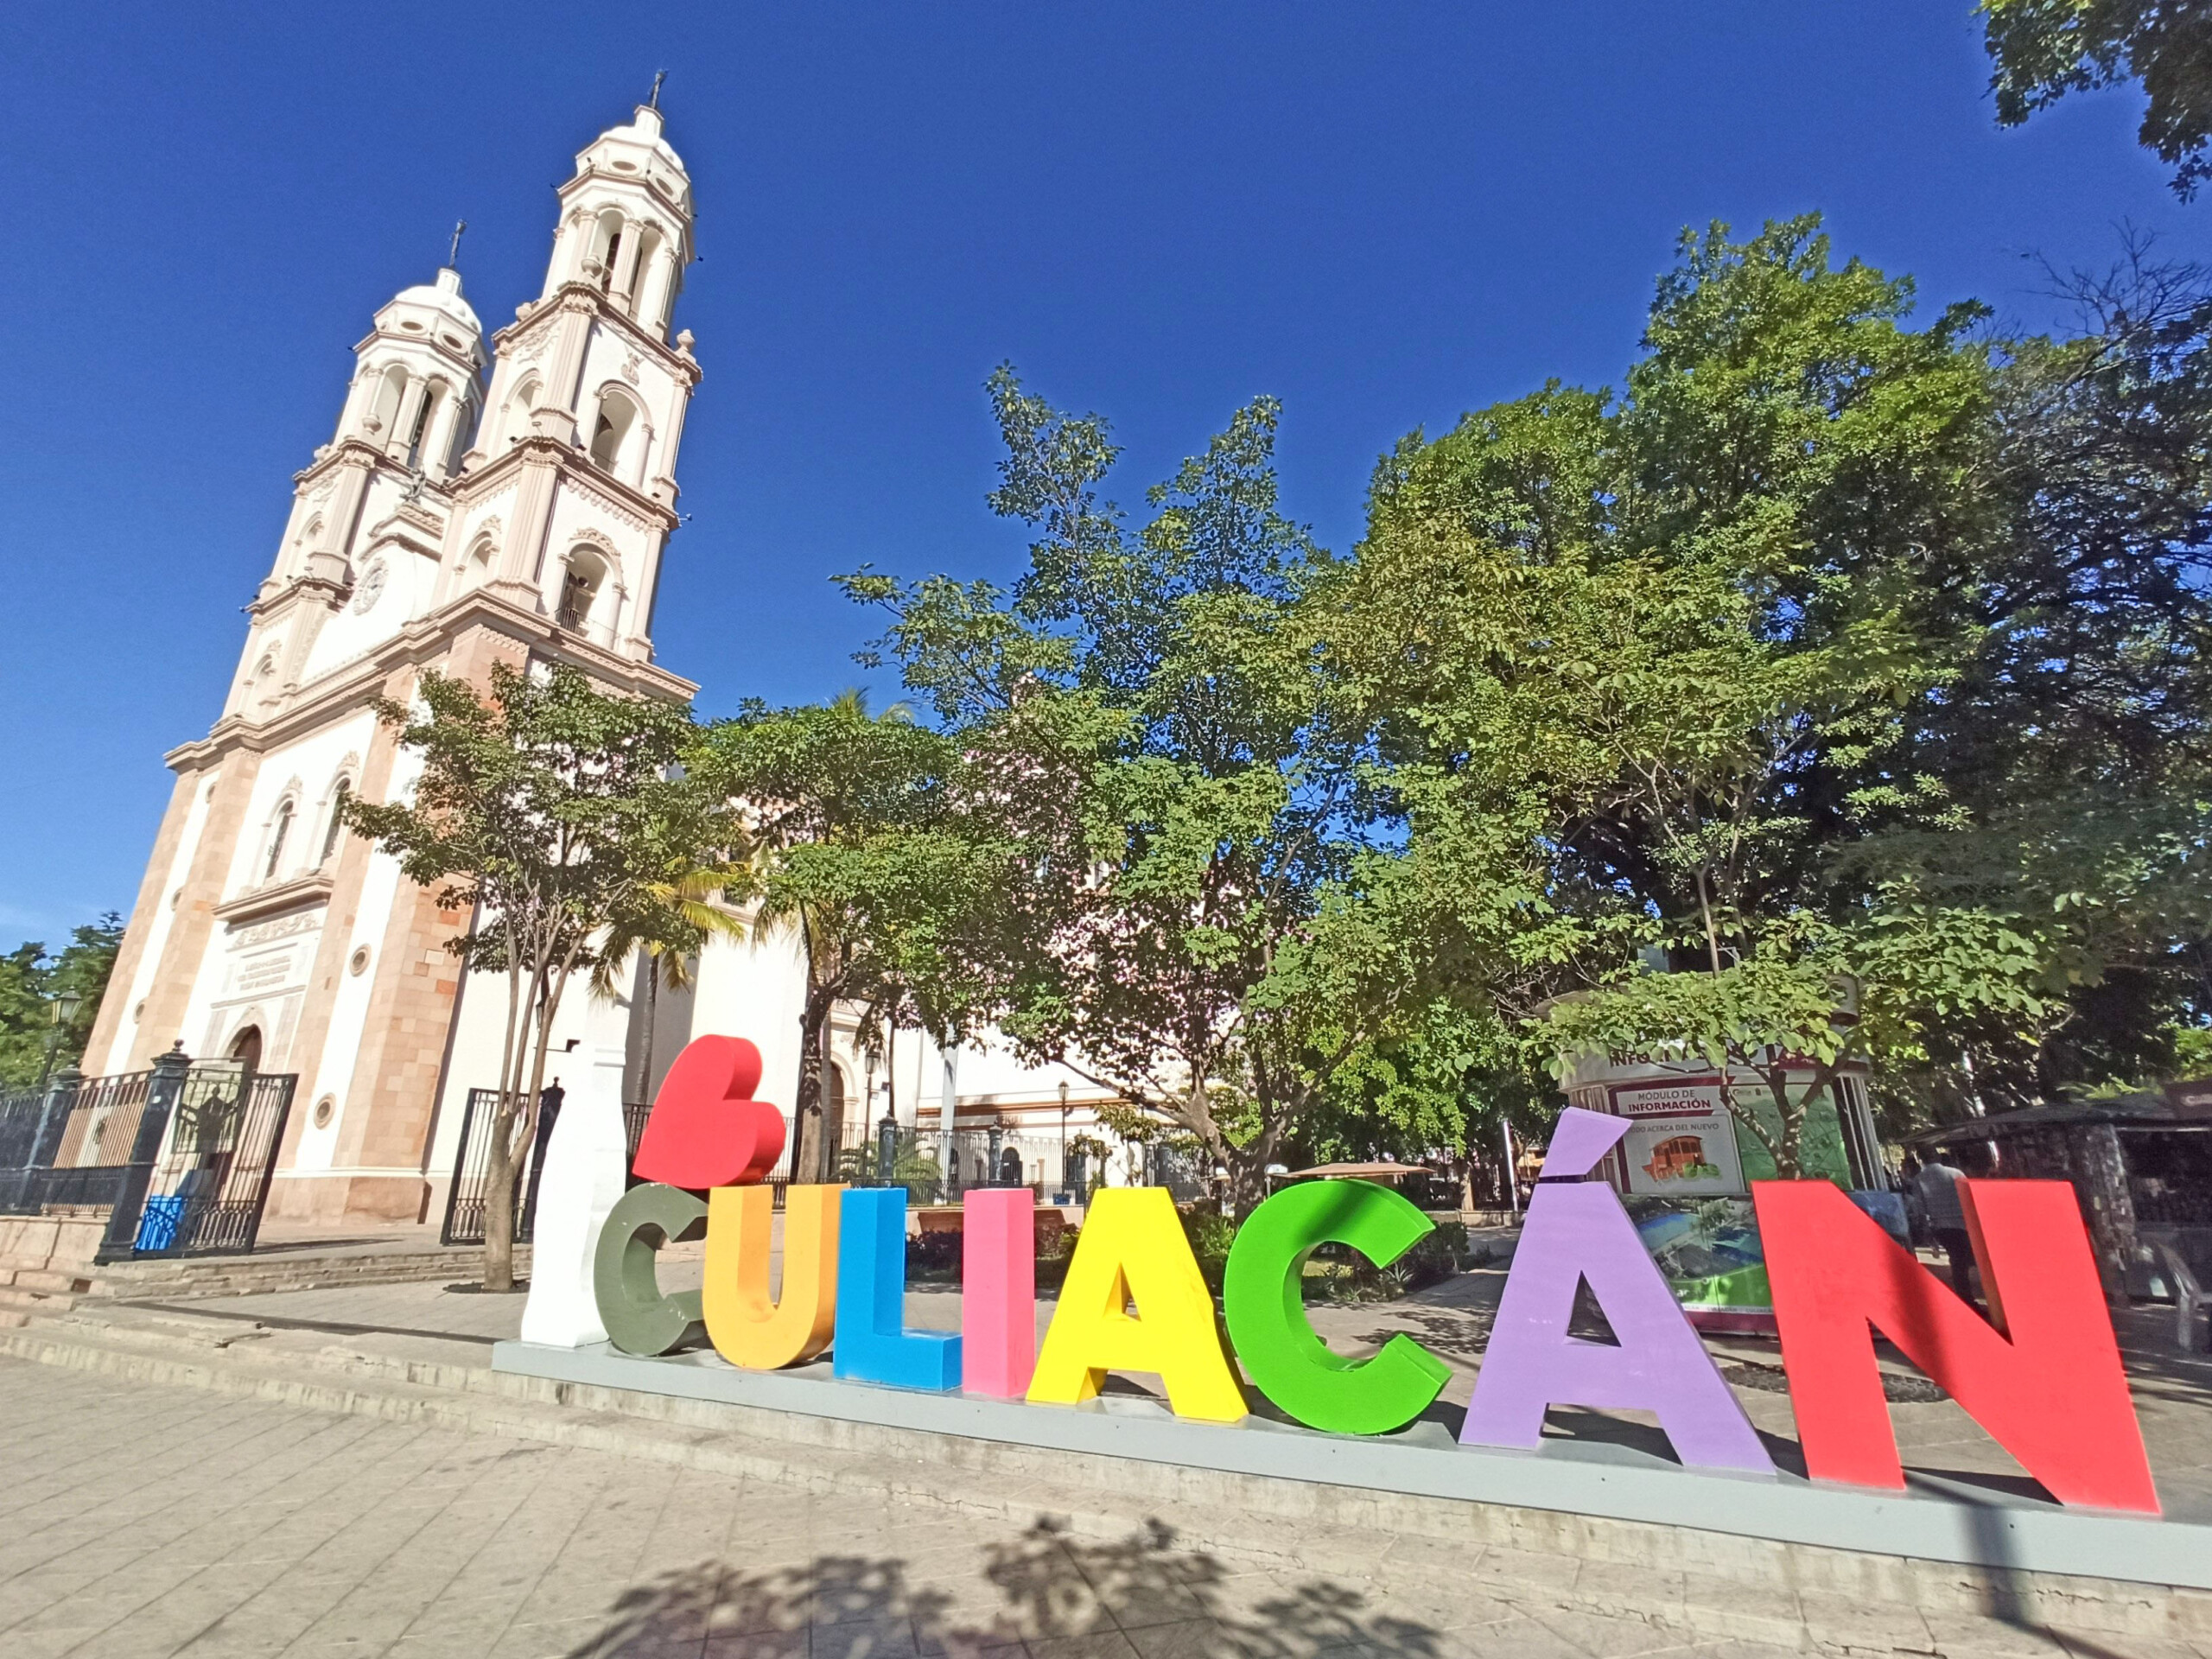 Culiacán Sign Mexico